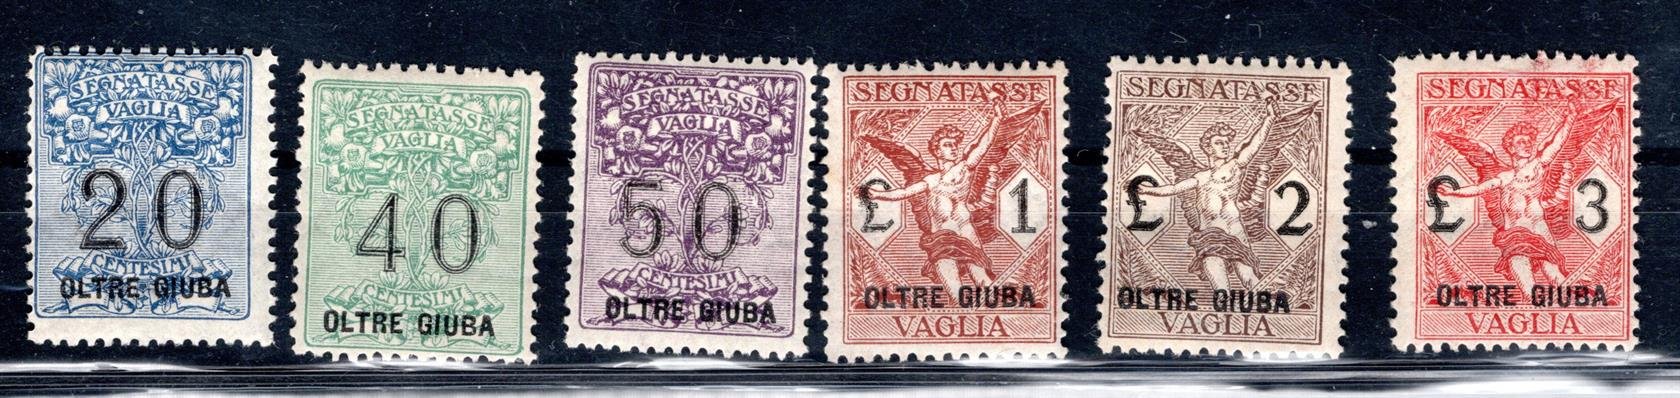 Itálie . kolonie, OLTRE GIUBA,  Sassone 1 - 6, přetisk "OLTRE GIUBA" na Italie, přpouštěcí 1-6, , kat. Sassone 1800 Euro